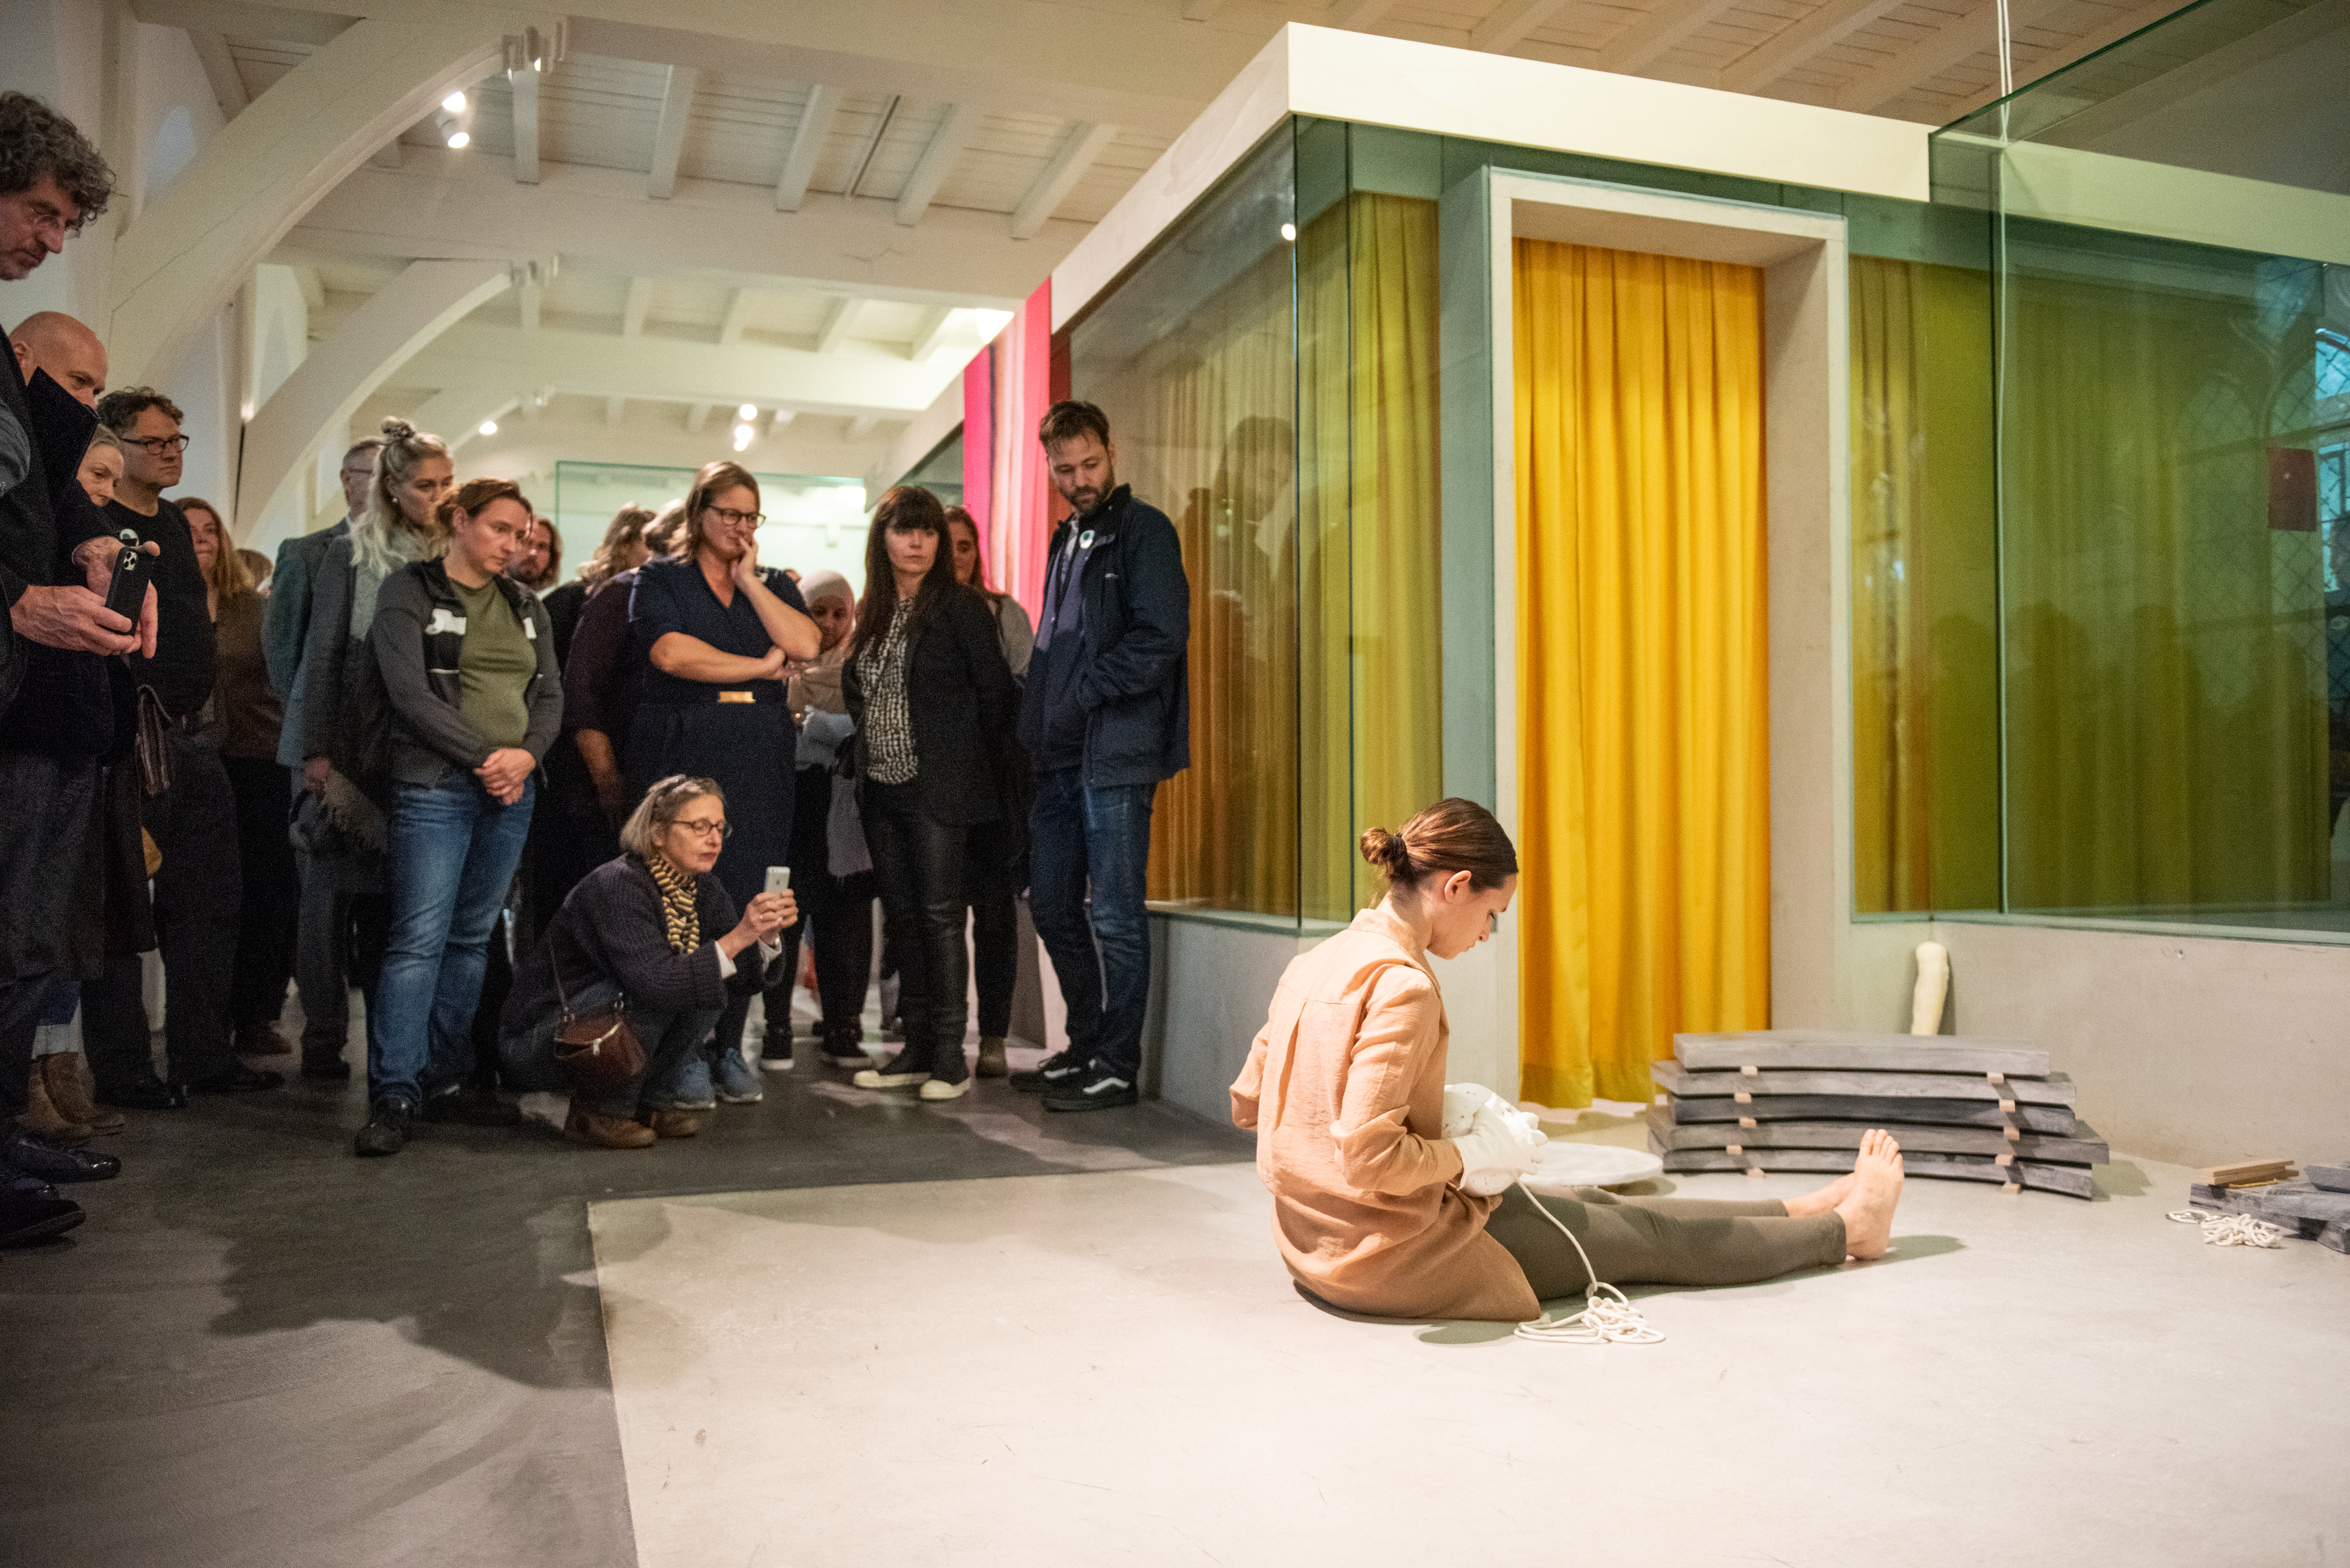 bezoekers bekijken de performance in de tentoonstelling, de performer zit op de grond met een gipsen hoofd op schoot